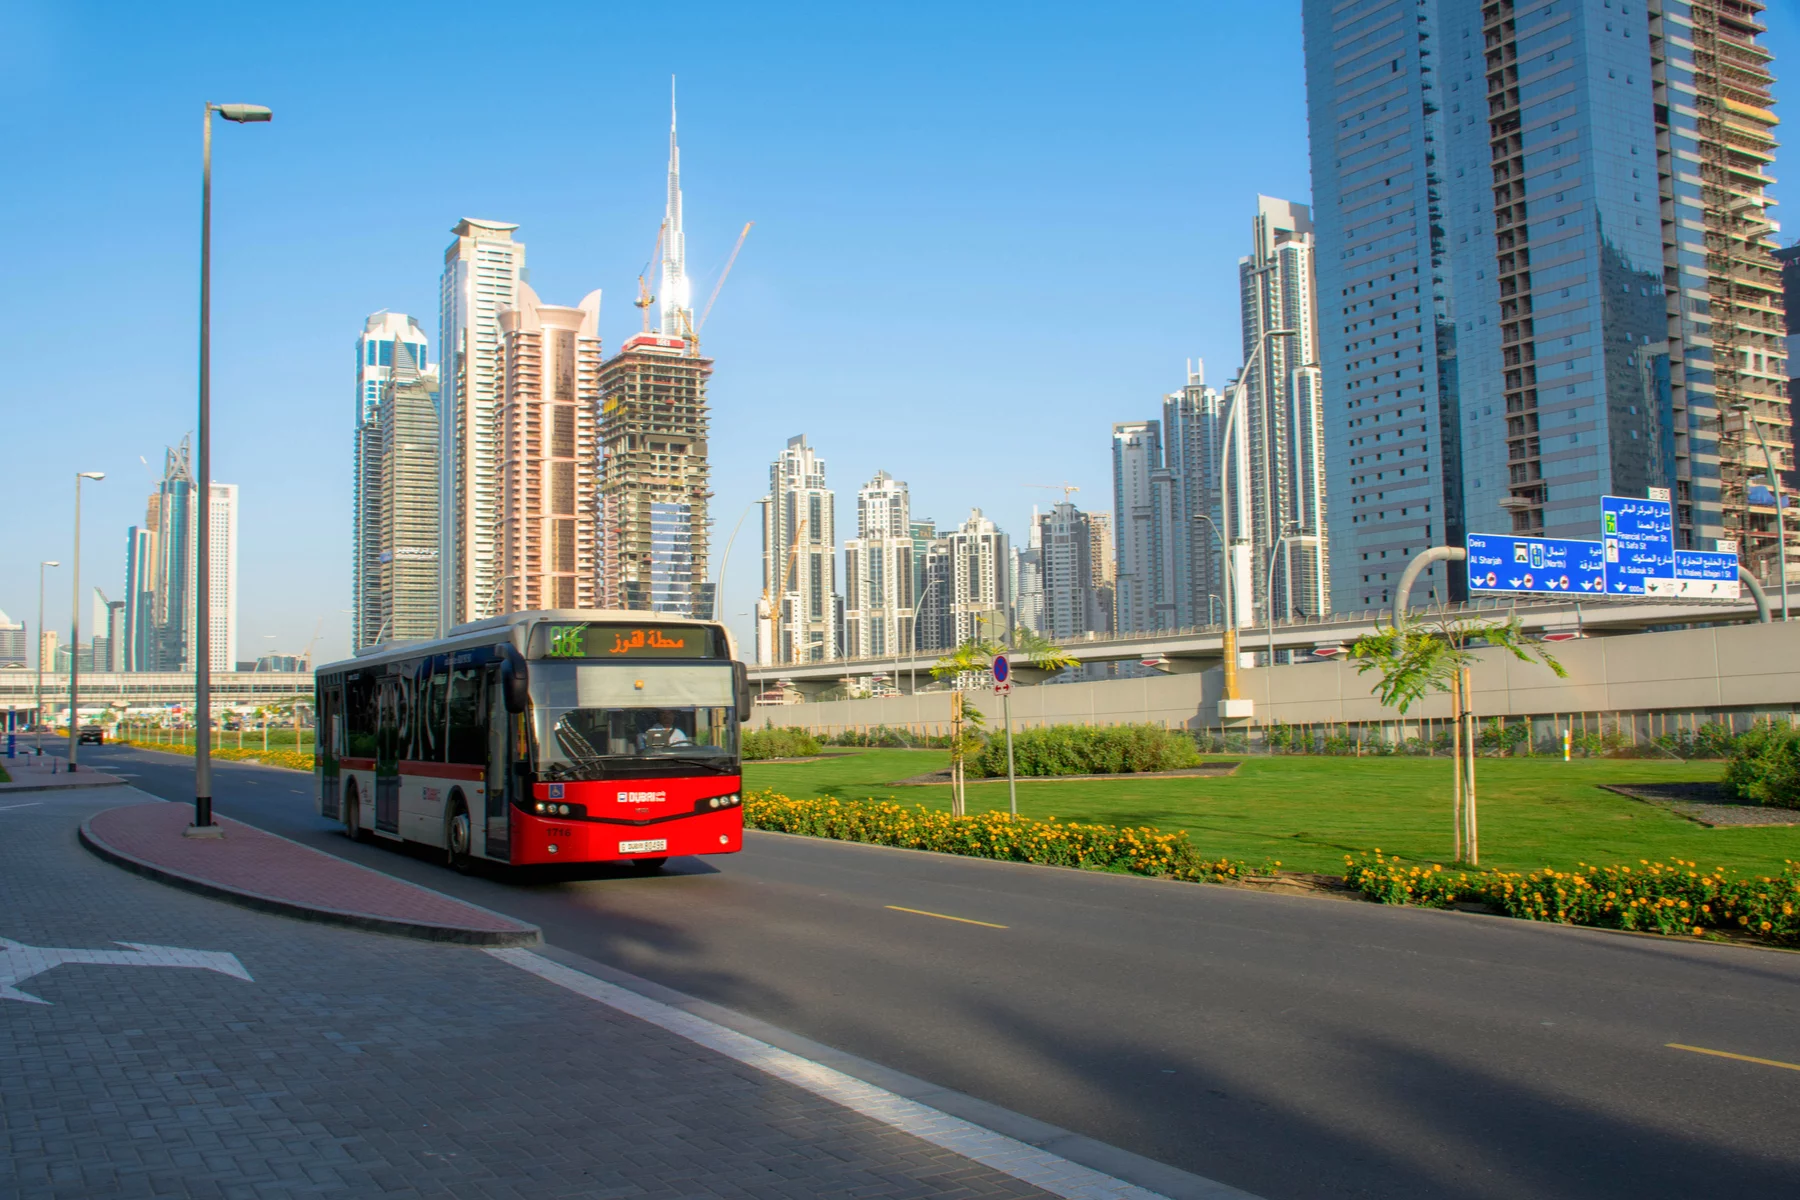 Public bus in the UAE